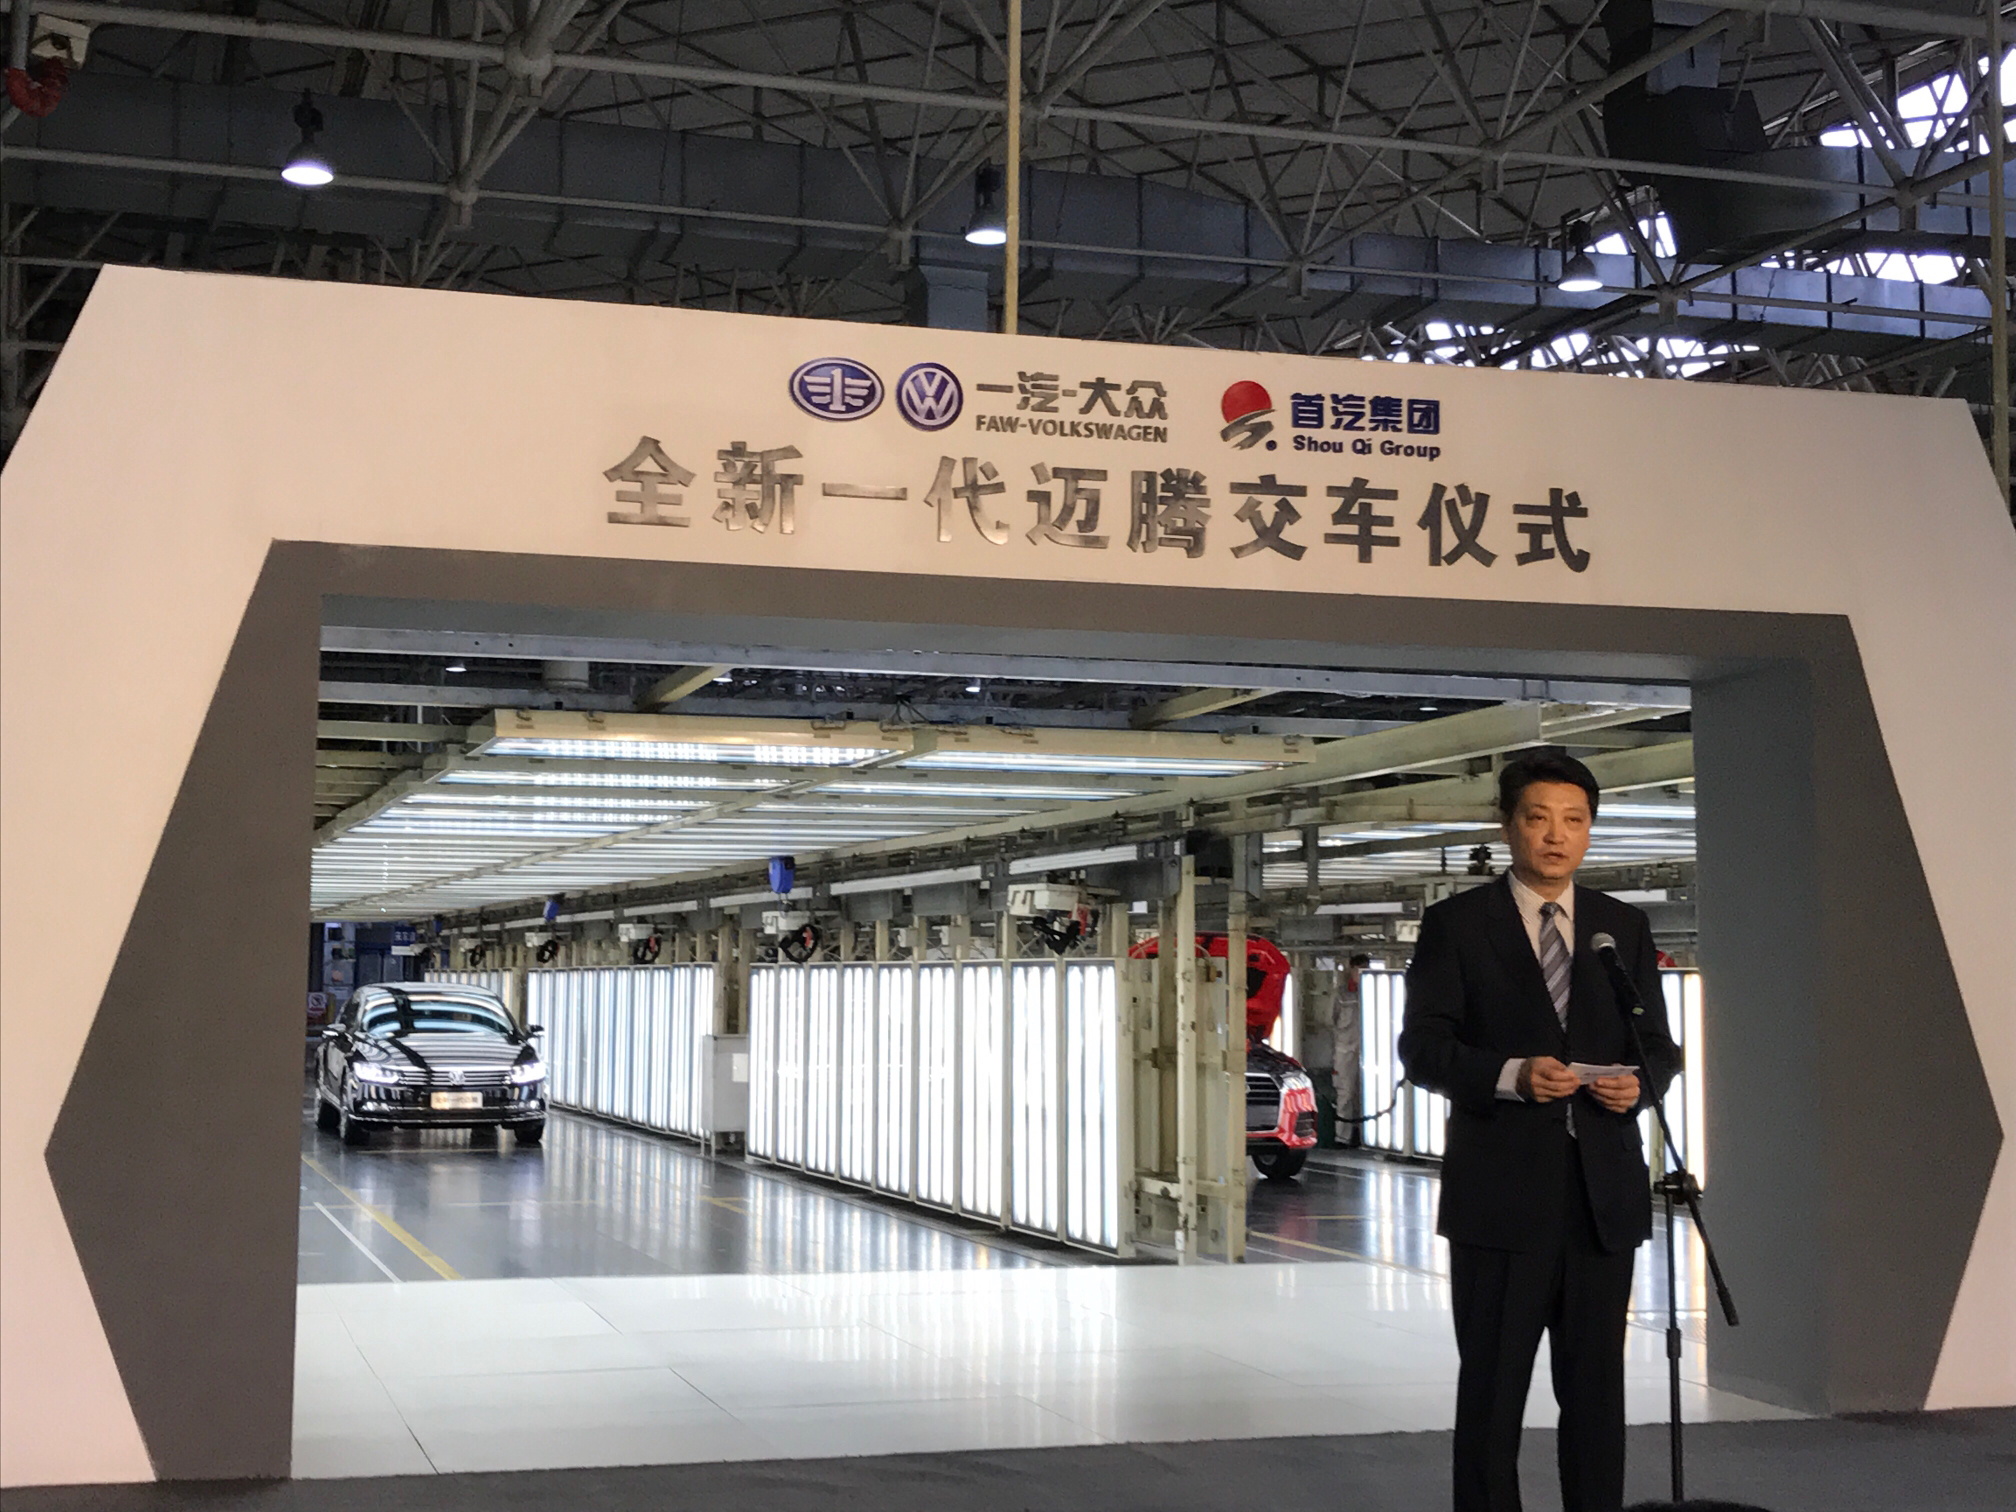 中国重型汽车集团有限公司 - 山东省物流与交通运输协会